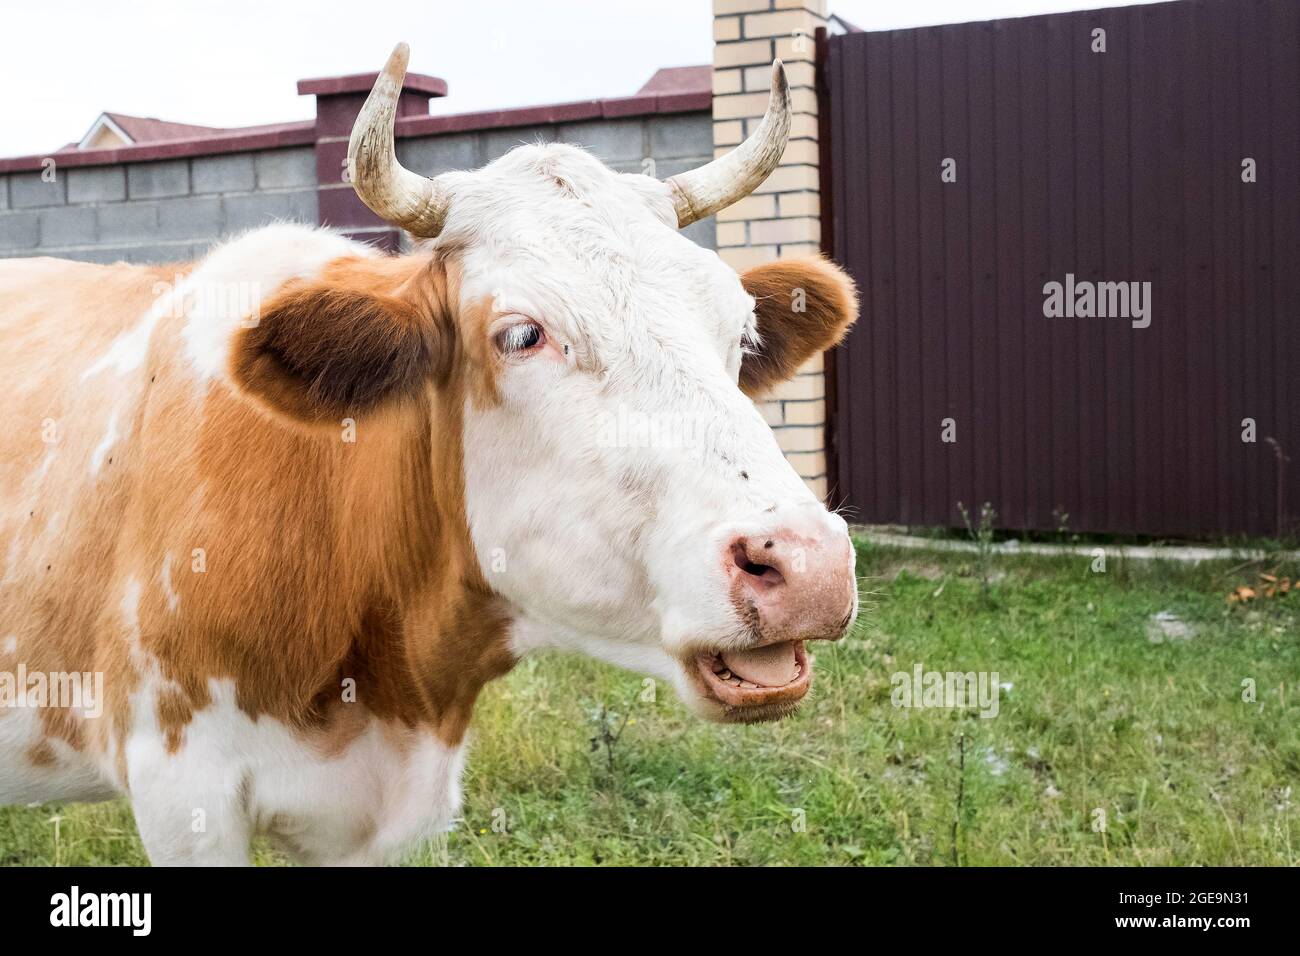 Eine Kuh mit offenem Mund, Zähne sind sichtbar. Fliegen kleben auf das Gesicht des Tieres. Stockfoto